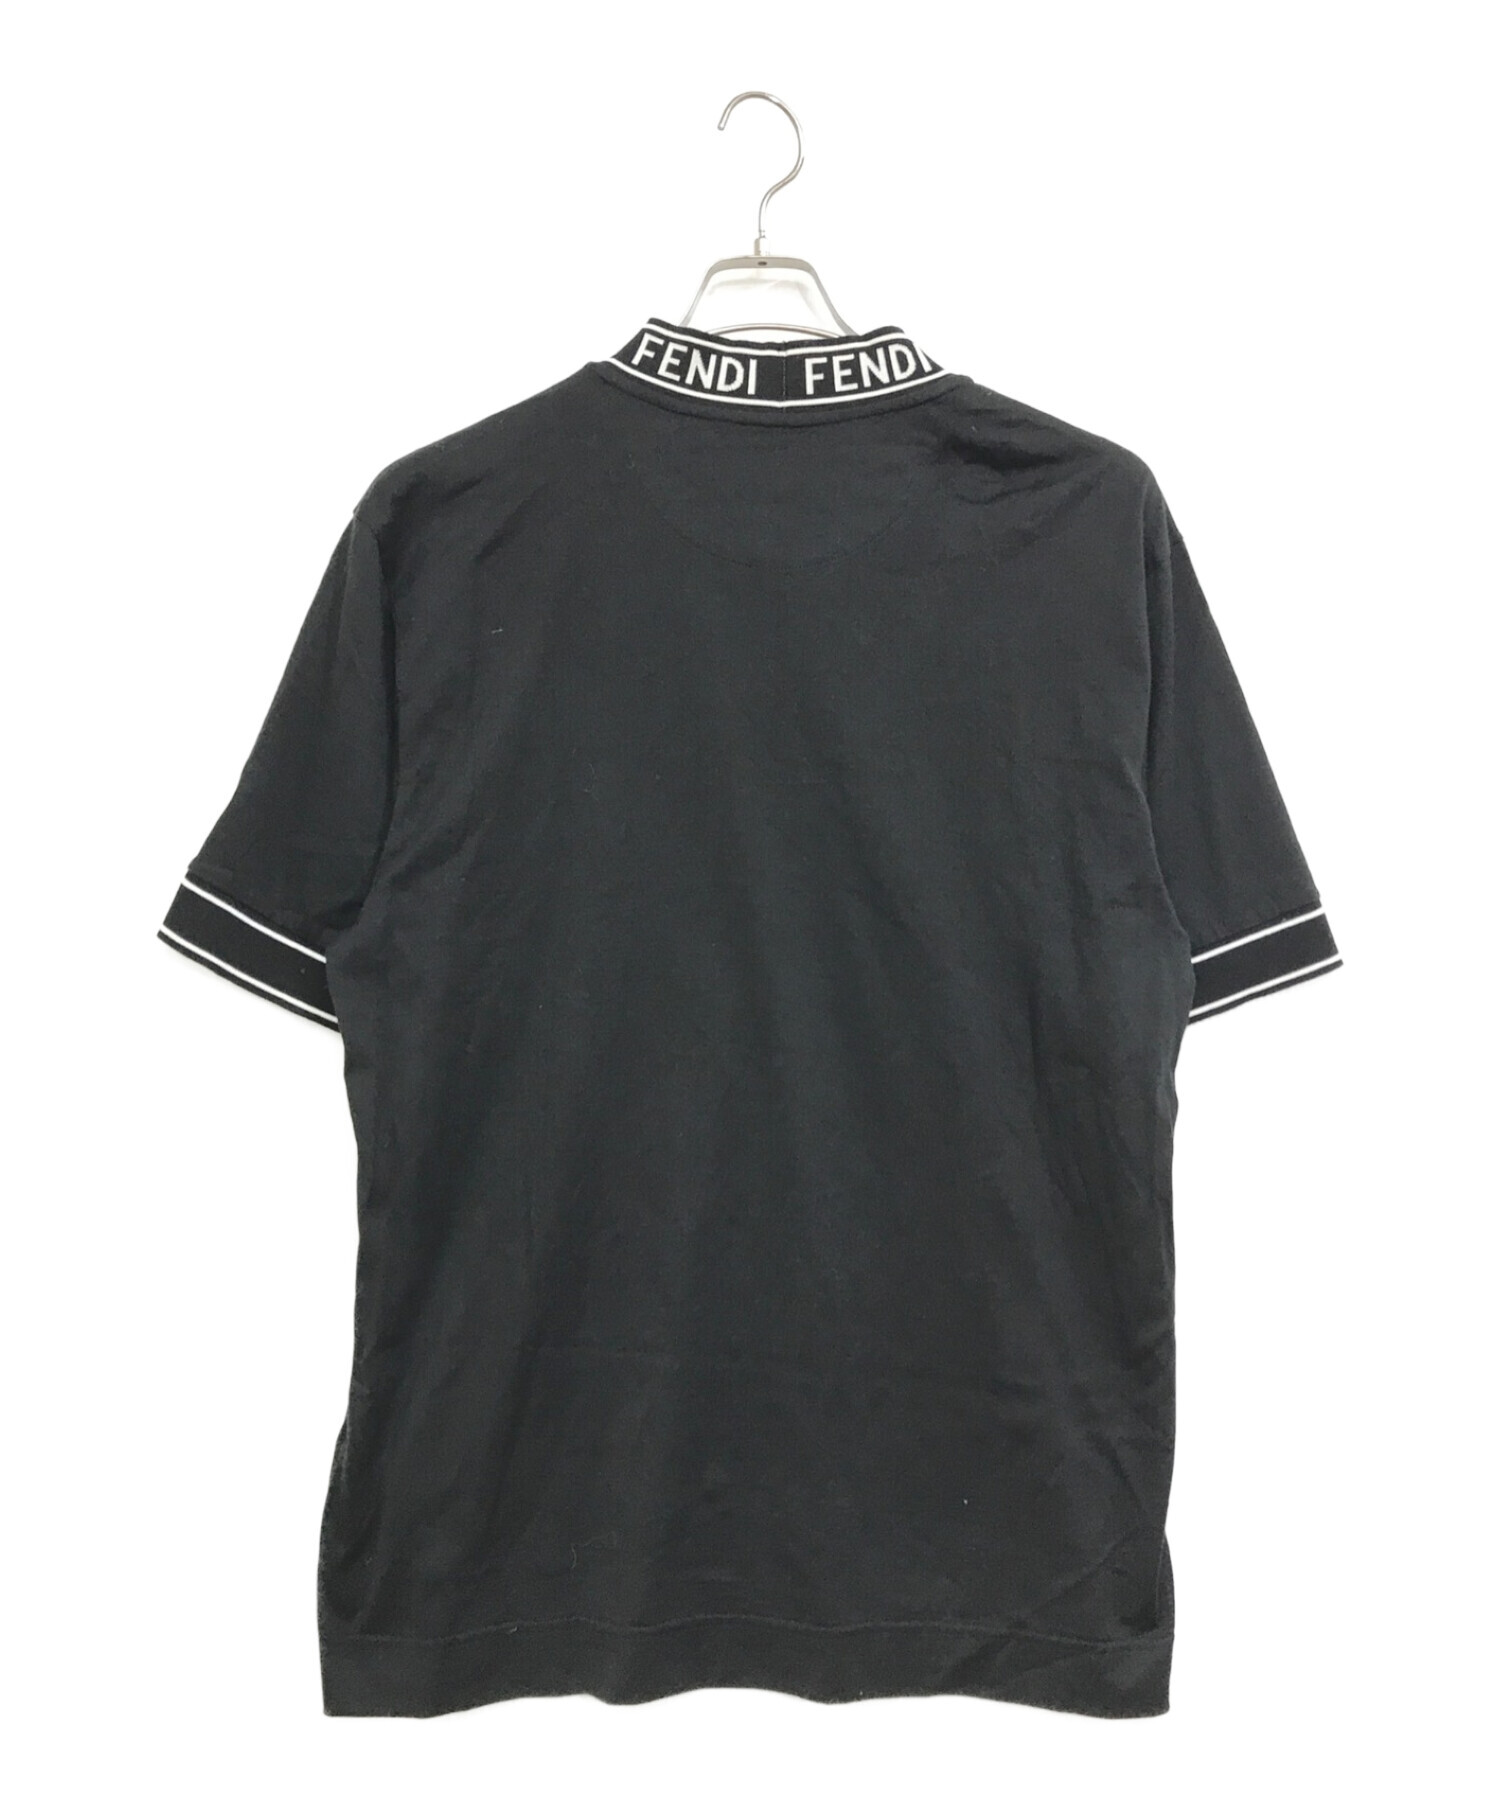 FENDI (フェンディ) ロゴハイネックTシャツ ブラック サイズ:L